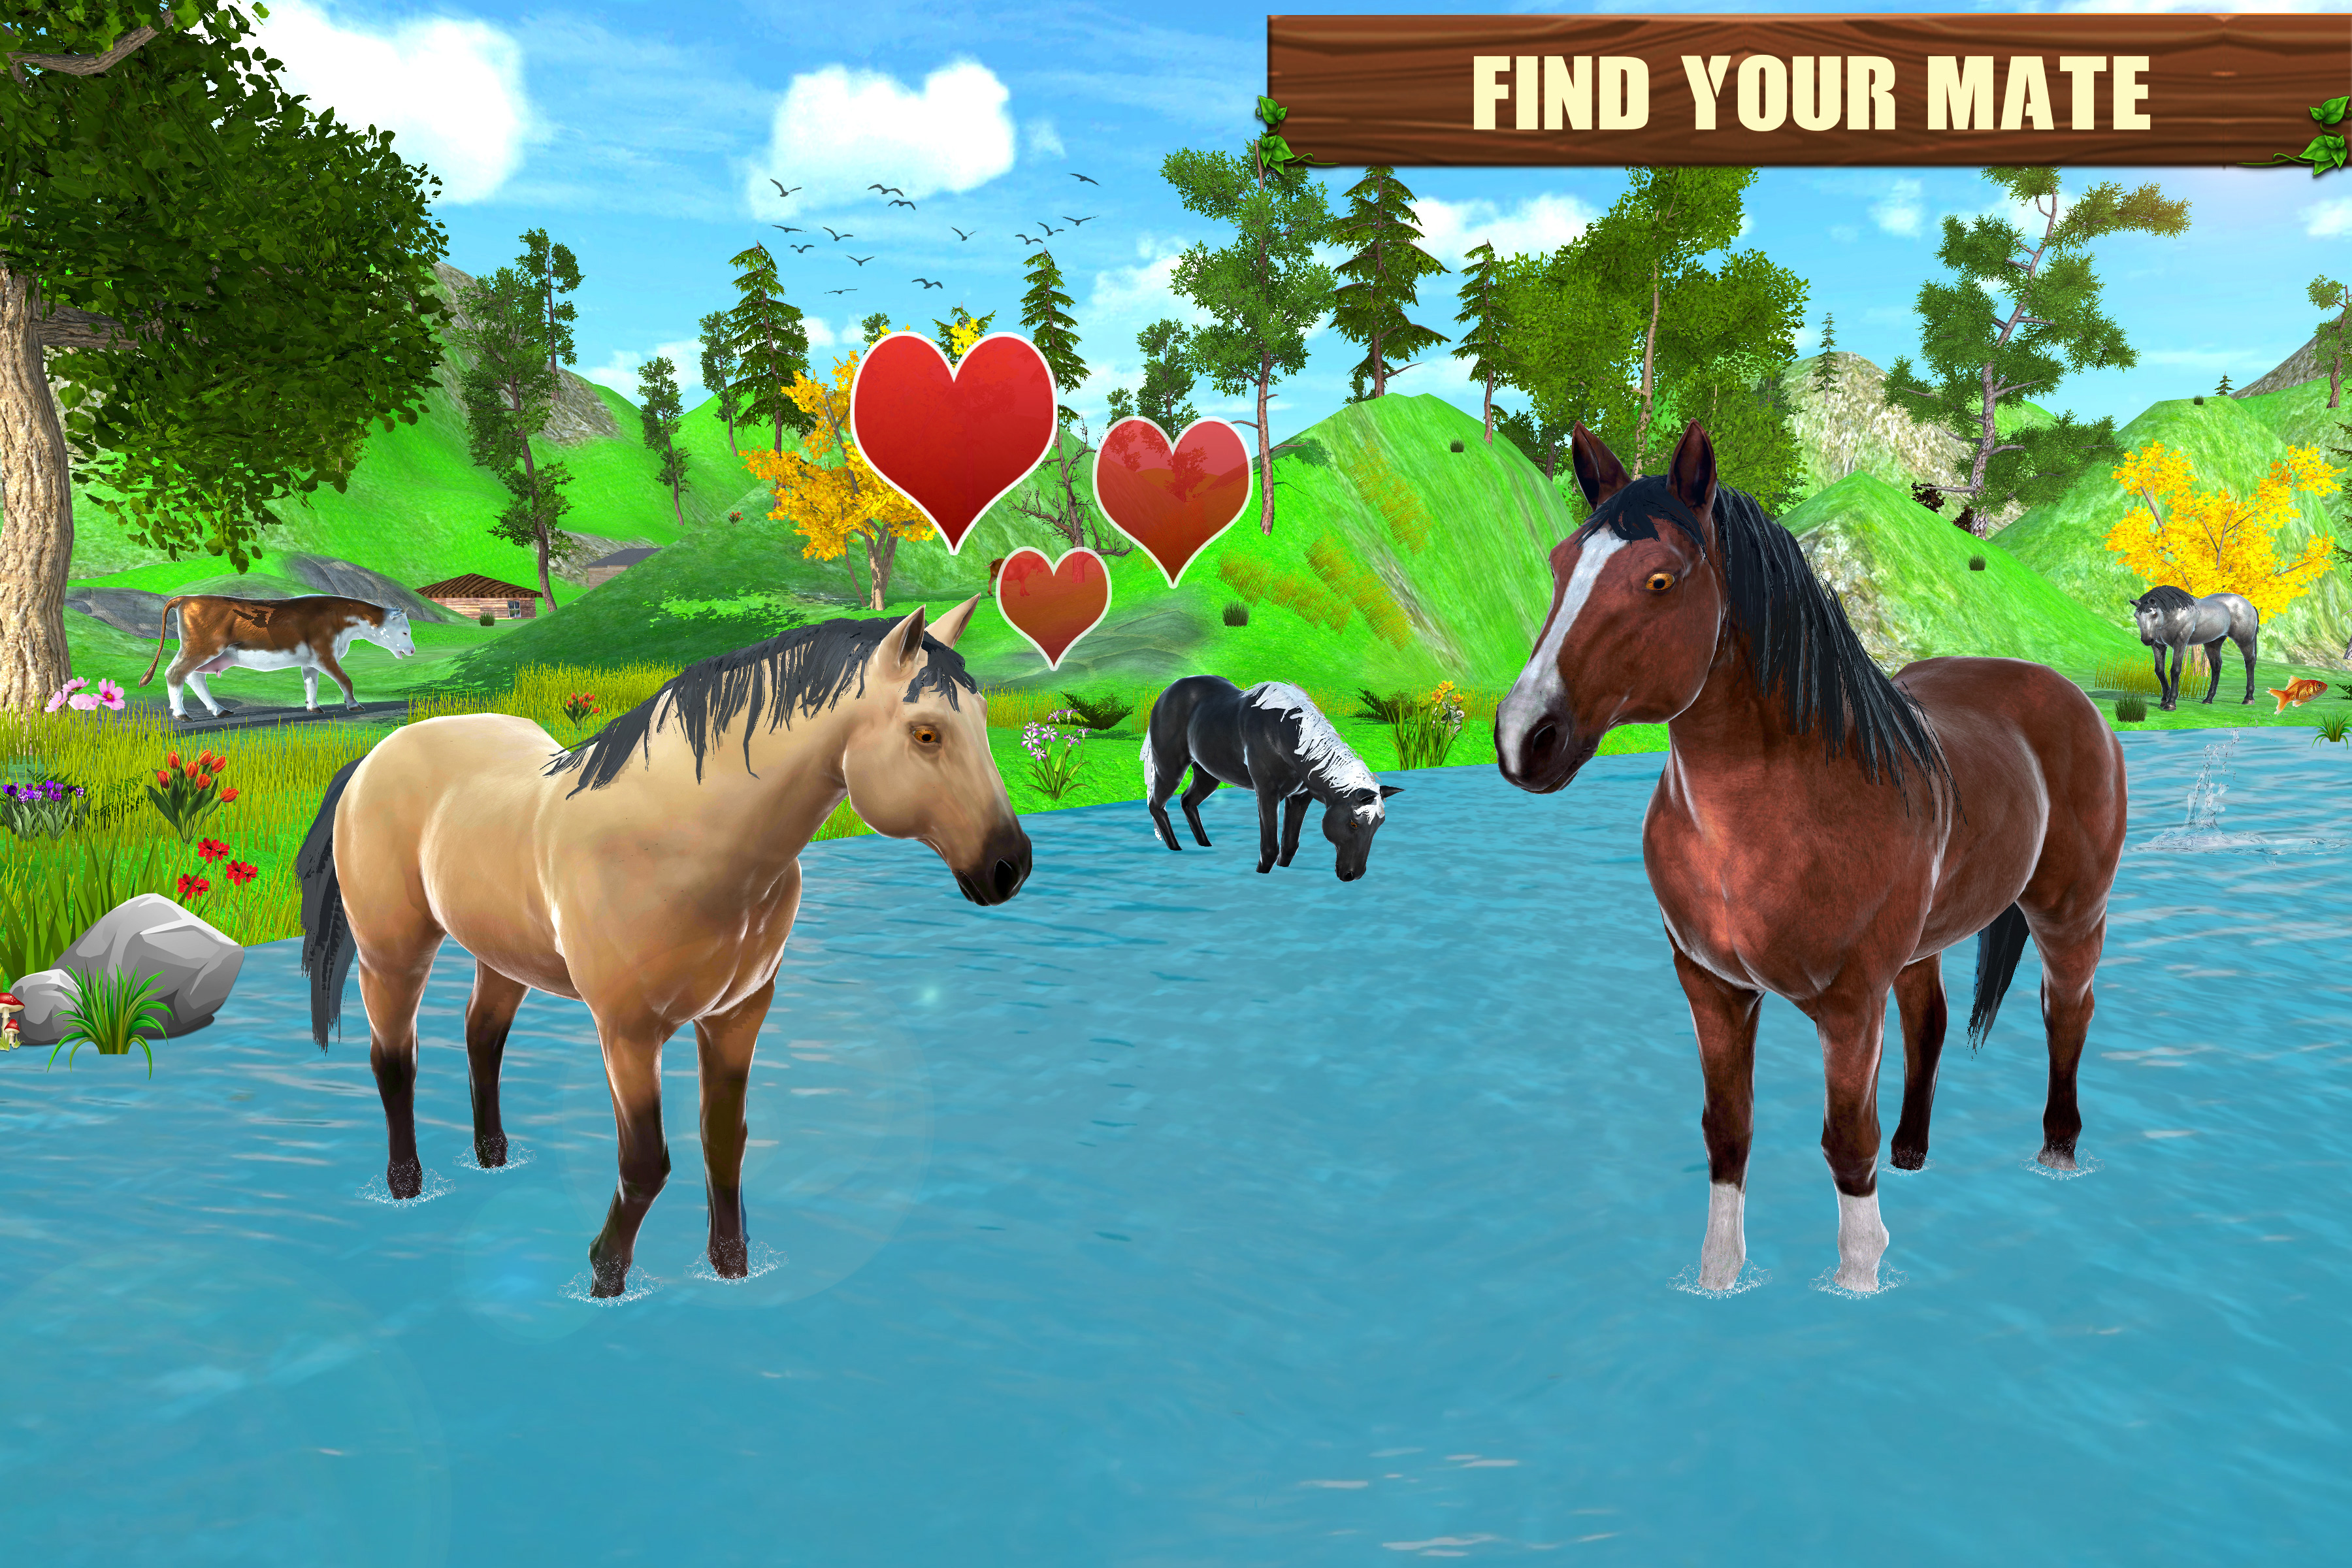 HORSE RANCHER jogo online gratuito em